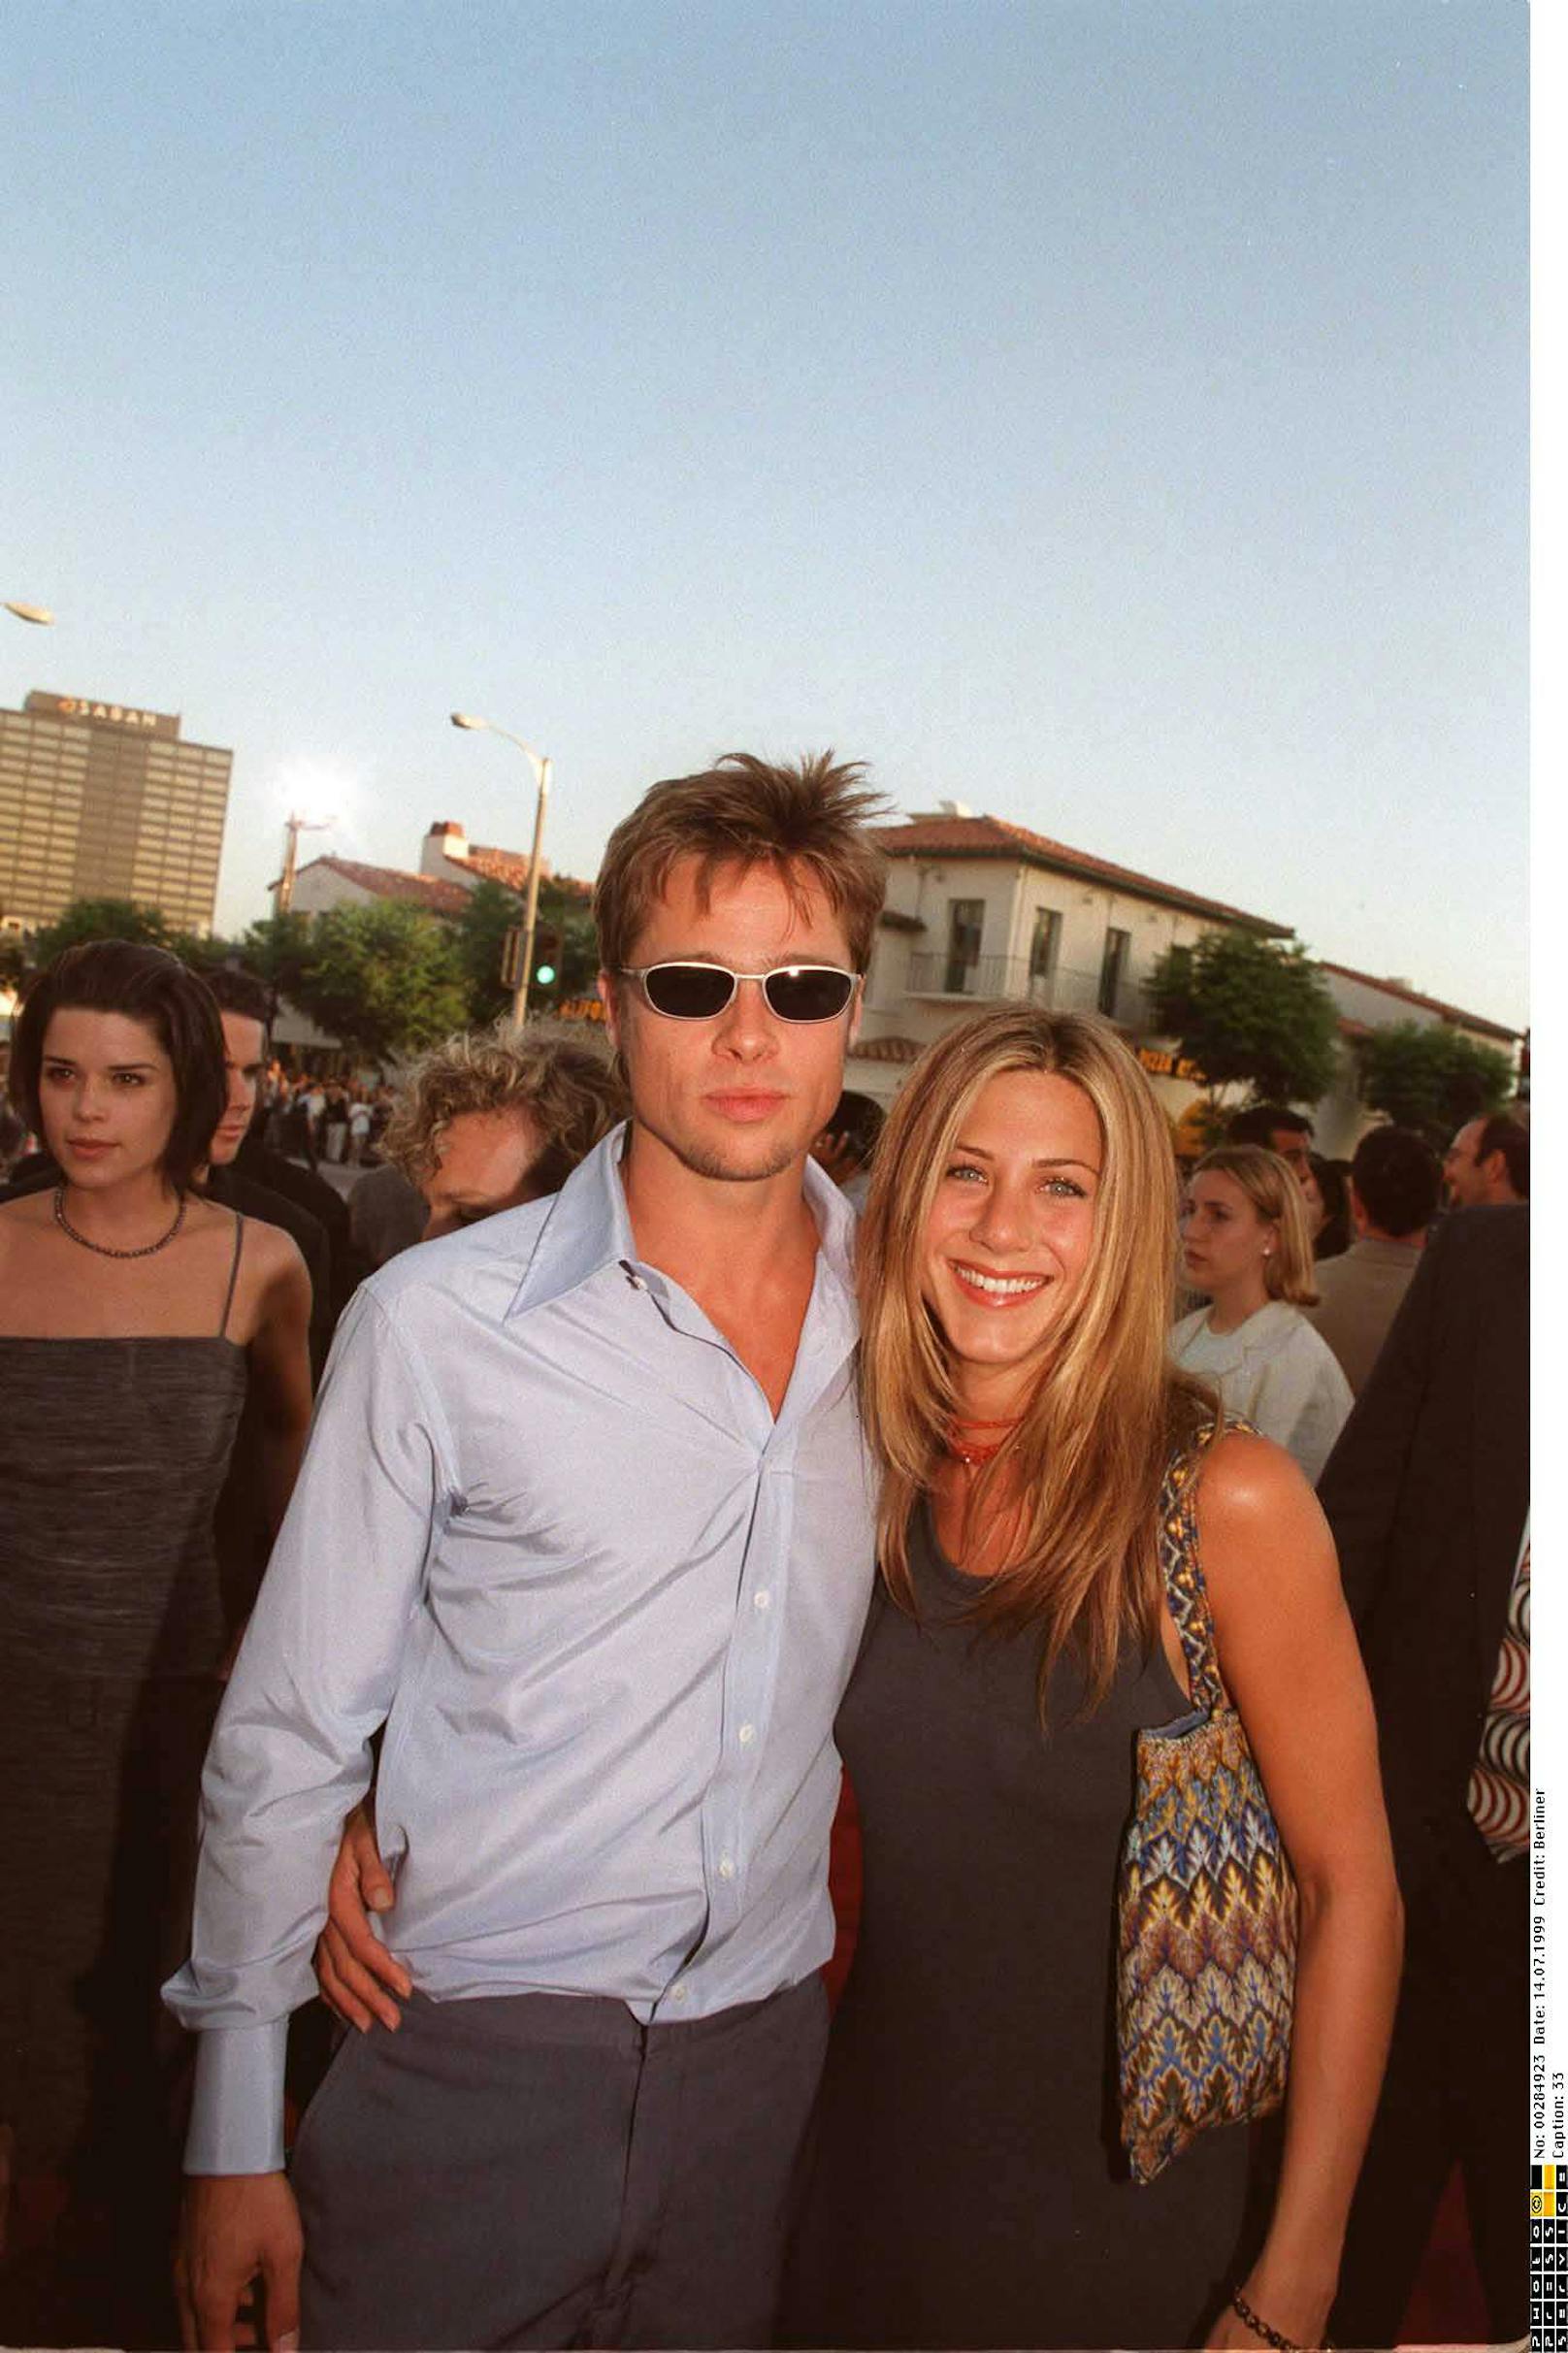 Brad Pitt mit seiner Ehefrau Jennifer Aniston. Mittlerweile sind die beiden Schauspieler wieder geschieden. Sie waren von 2000 bis 2005 zusammen.